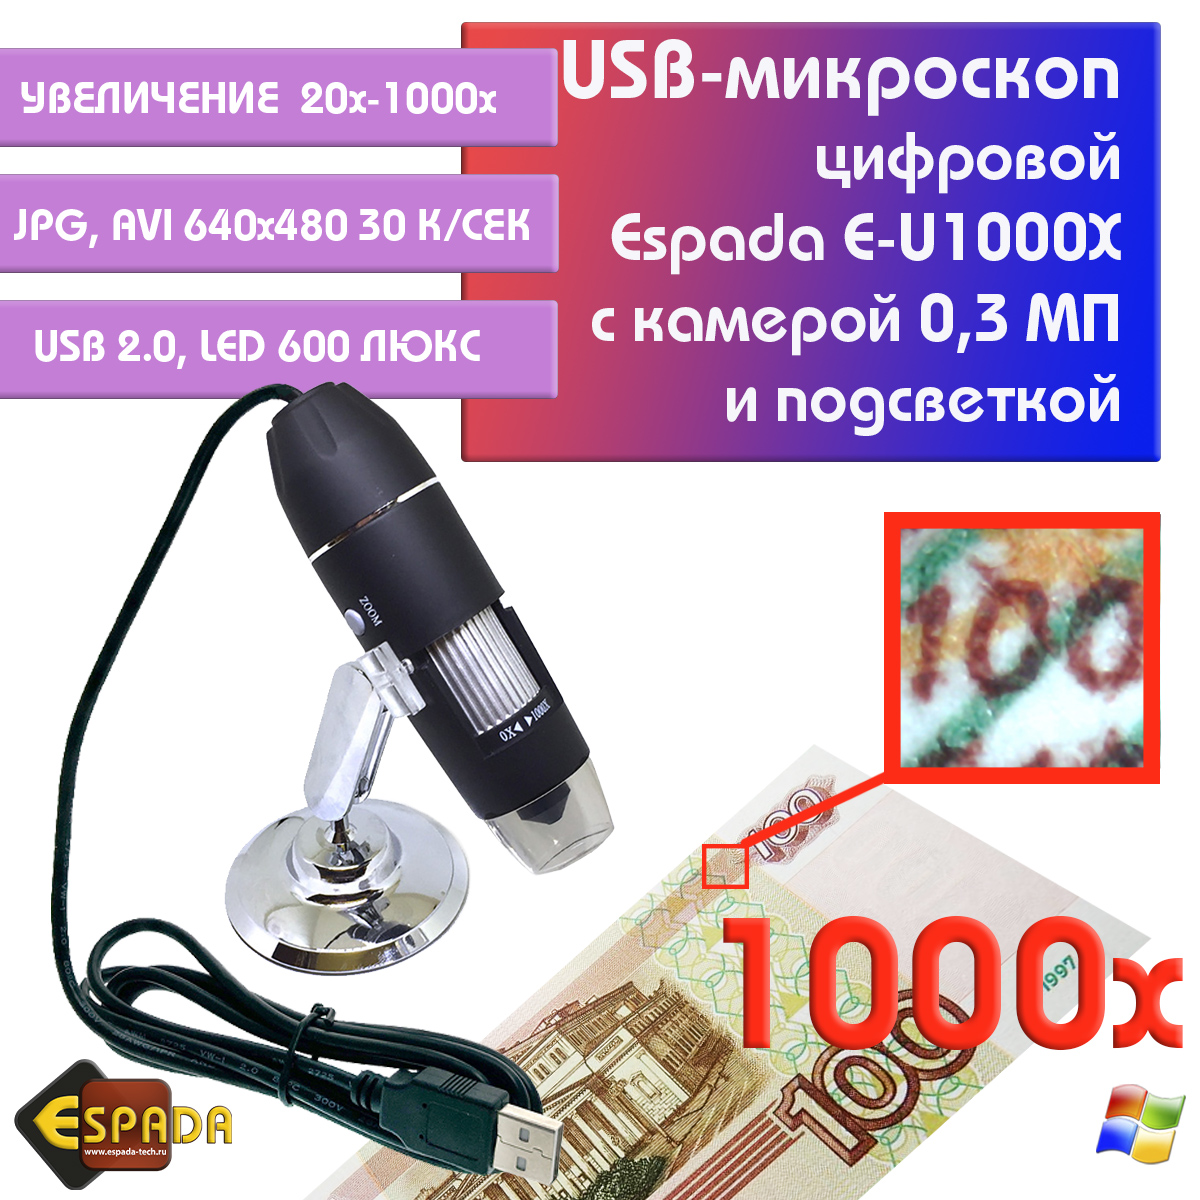 Портативный цифровой USB-микроскоп Espada E-U1000X c камерой 0,3 МП и увеличением 1000x видеокарта asus rx 550 2gb ph 550 2g